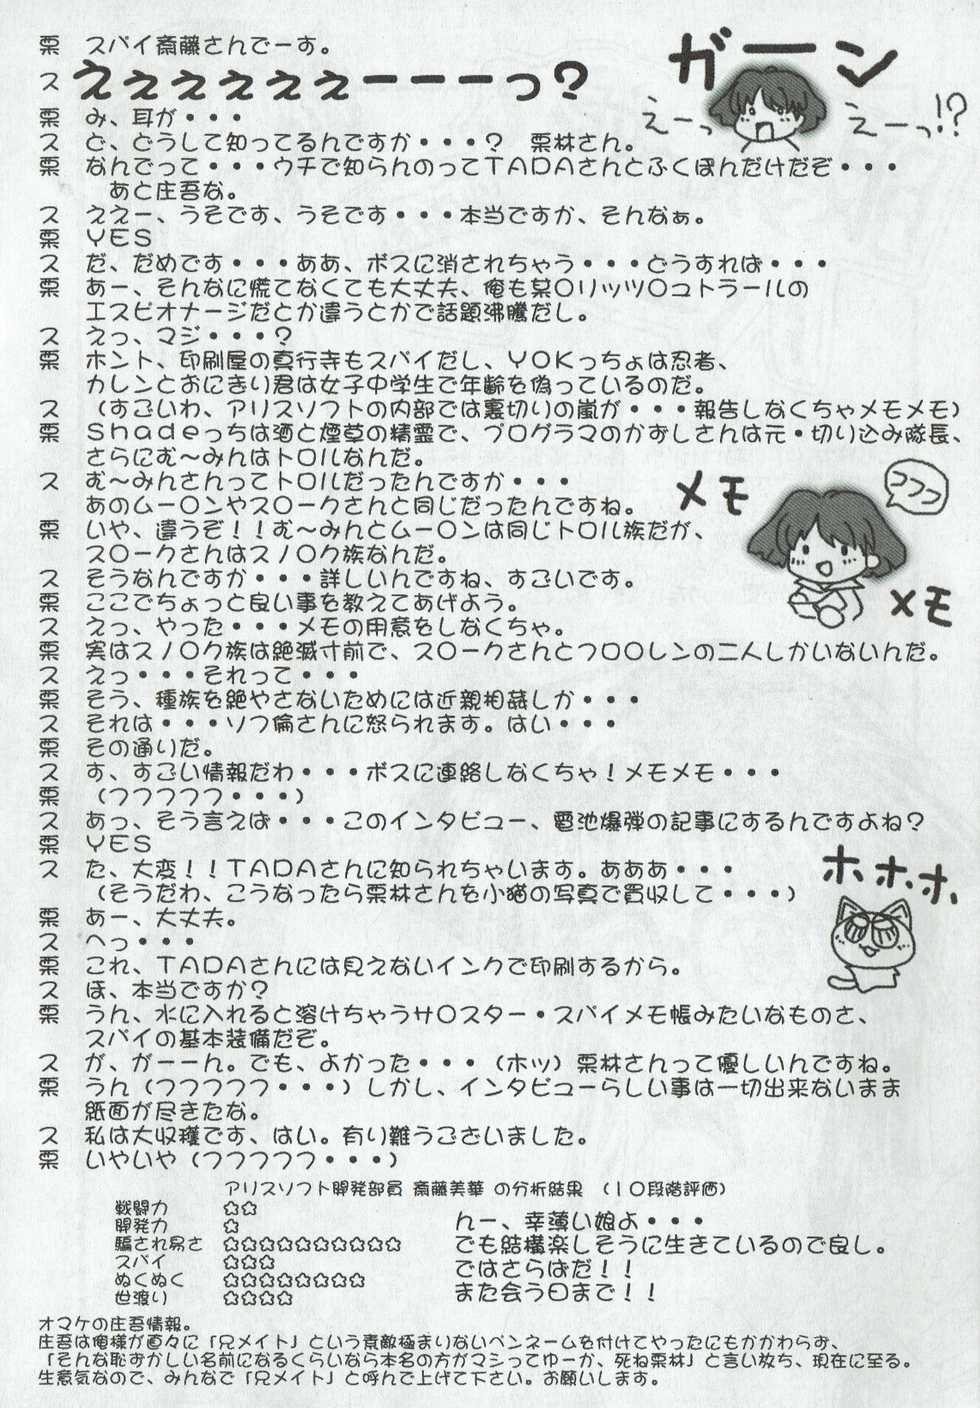 Arisu no Denchi Bakudan Vol. 08 - Page 19